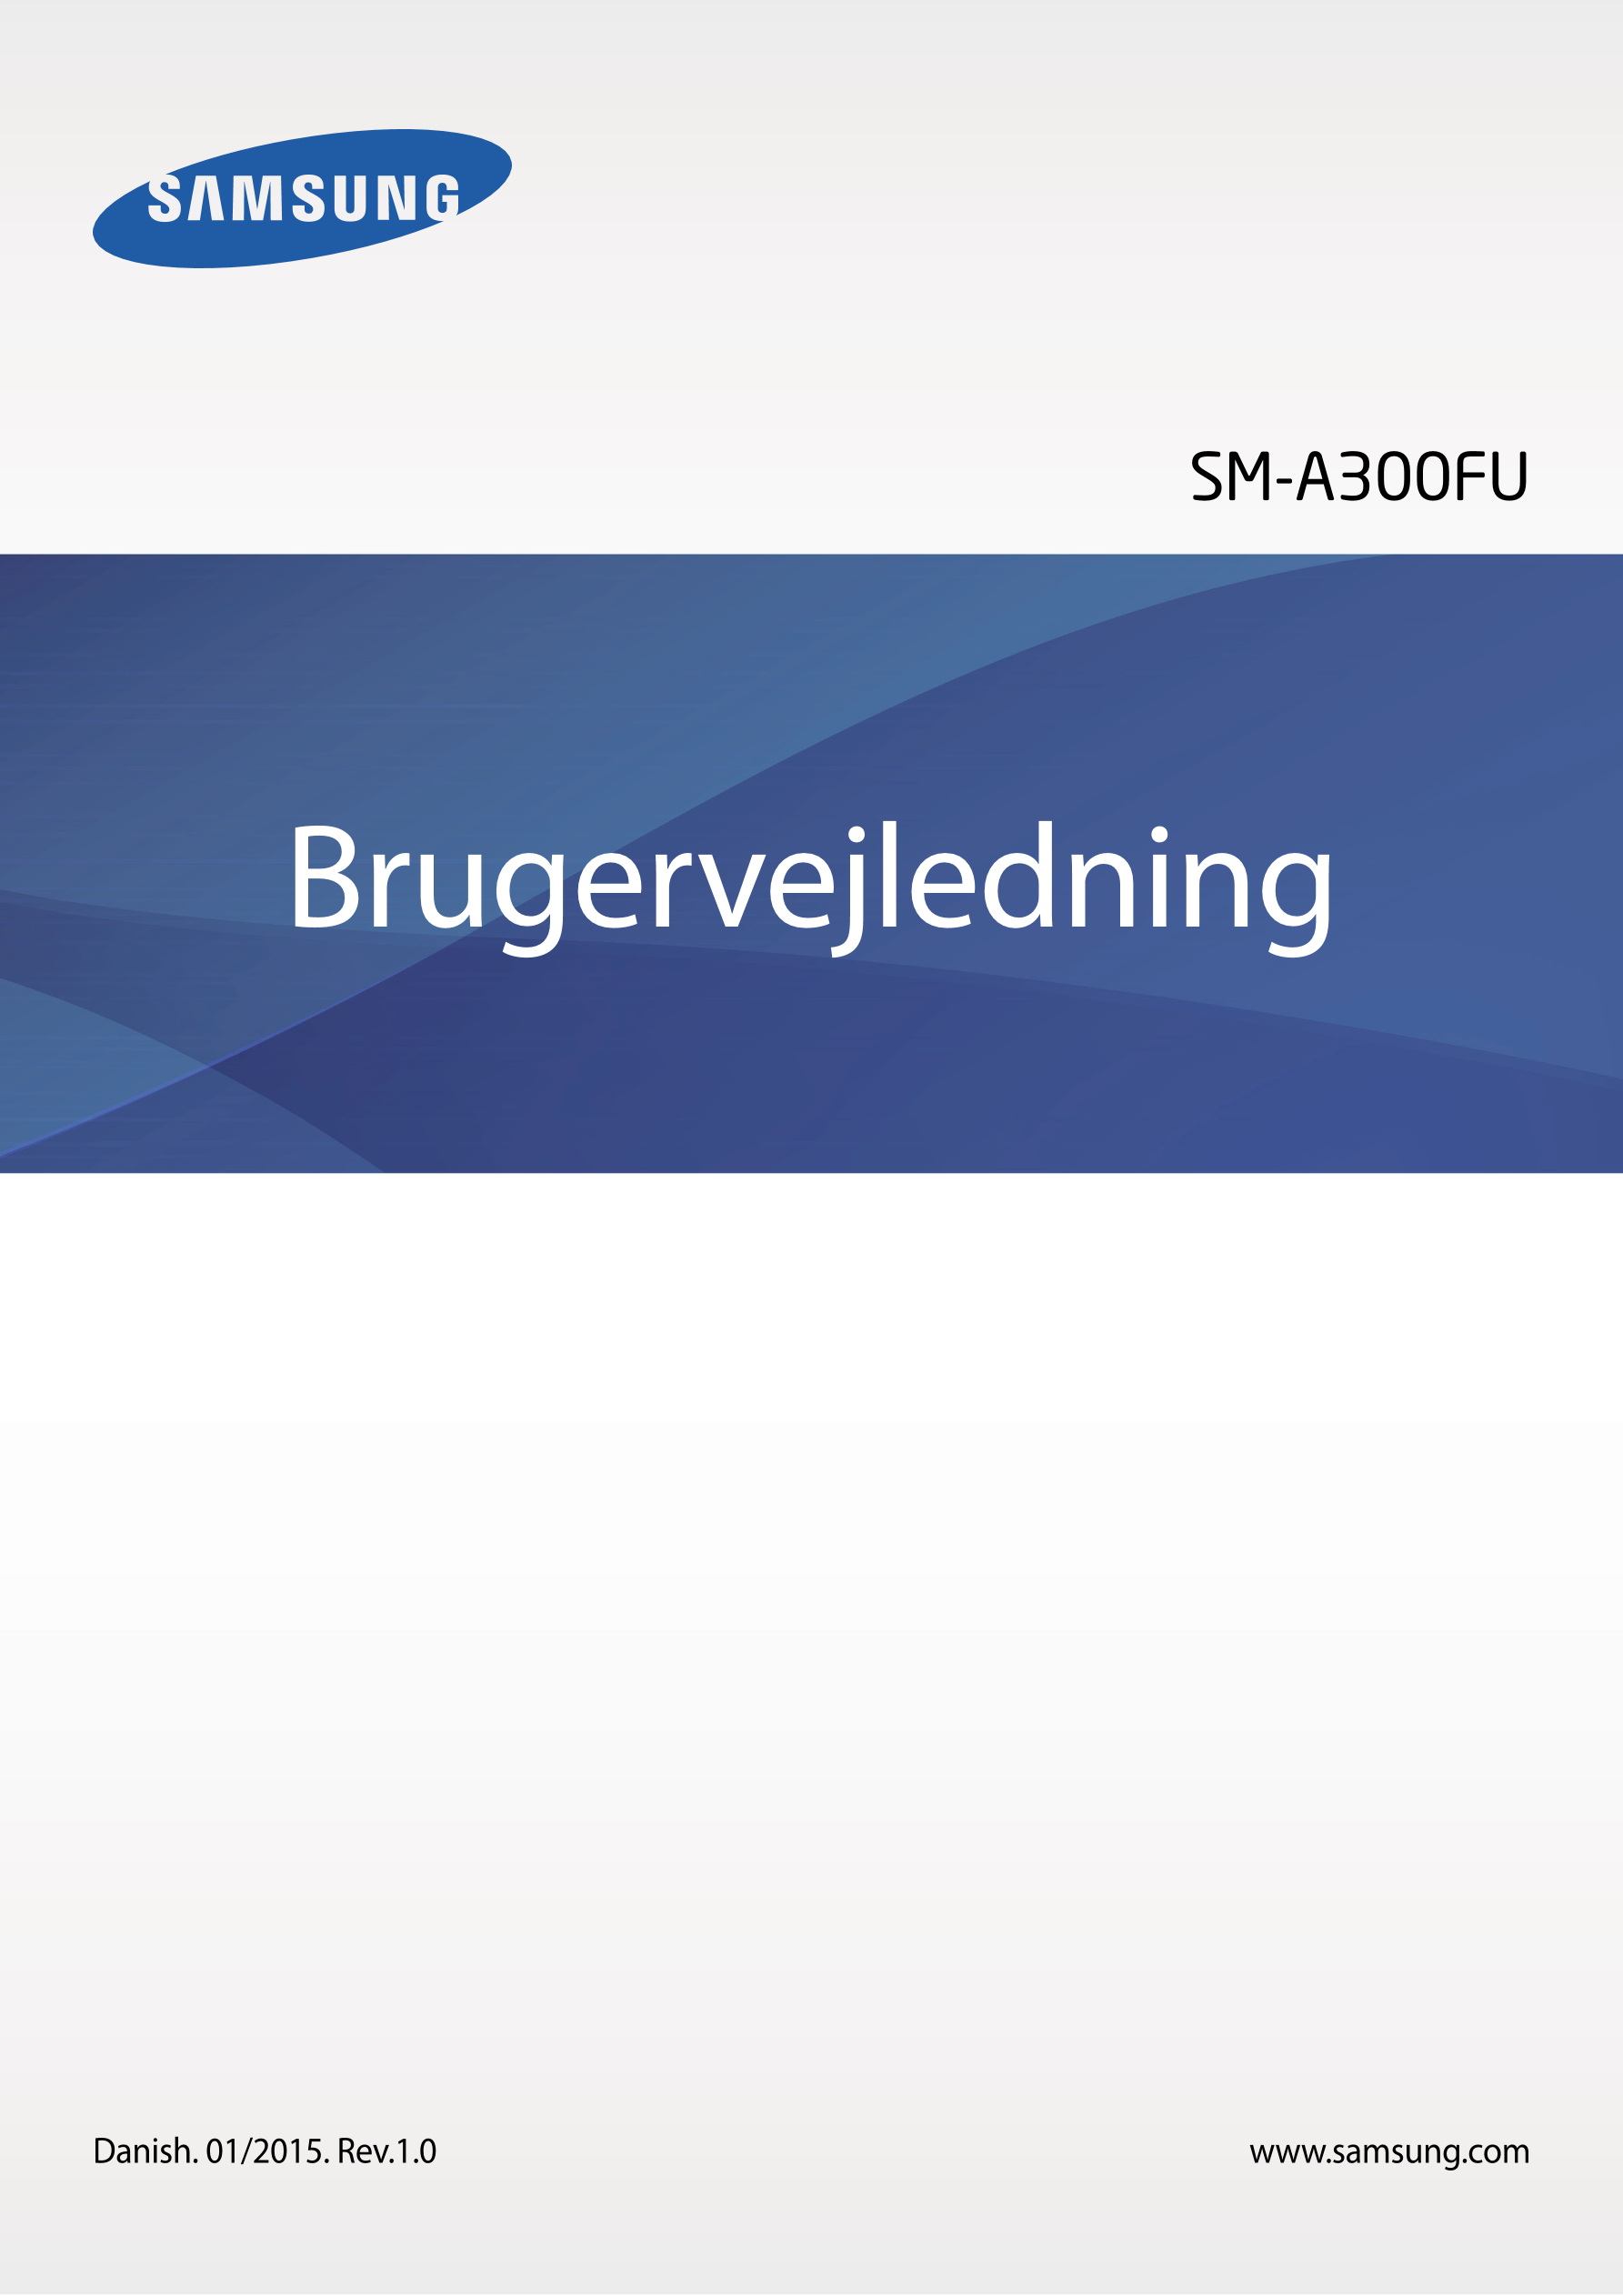 SM-A300FU
Brugervejledning
Danish. 01/2015. Rev.1.0 www.samsung.com